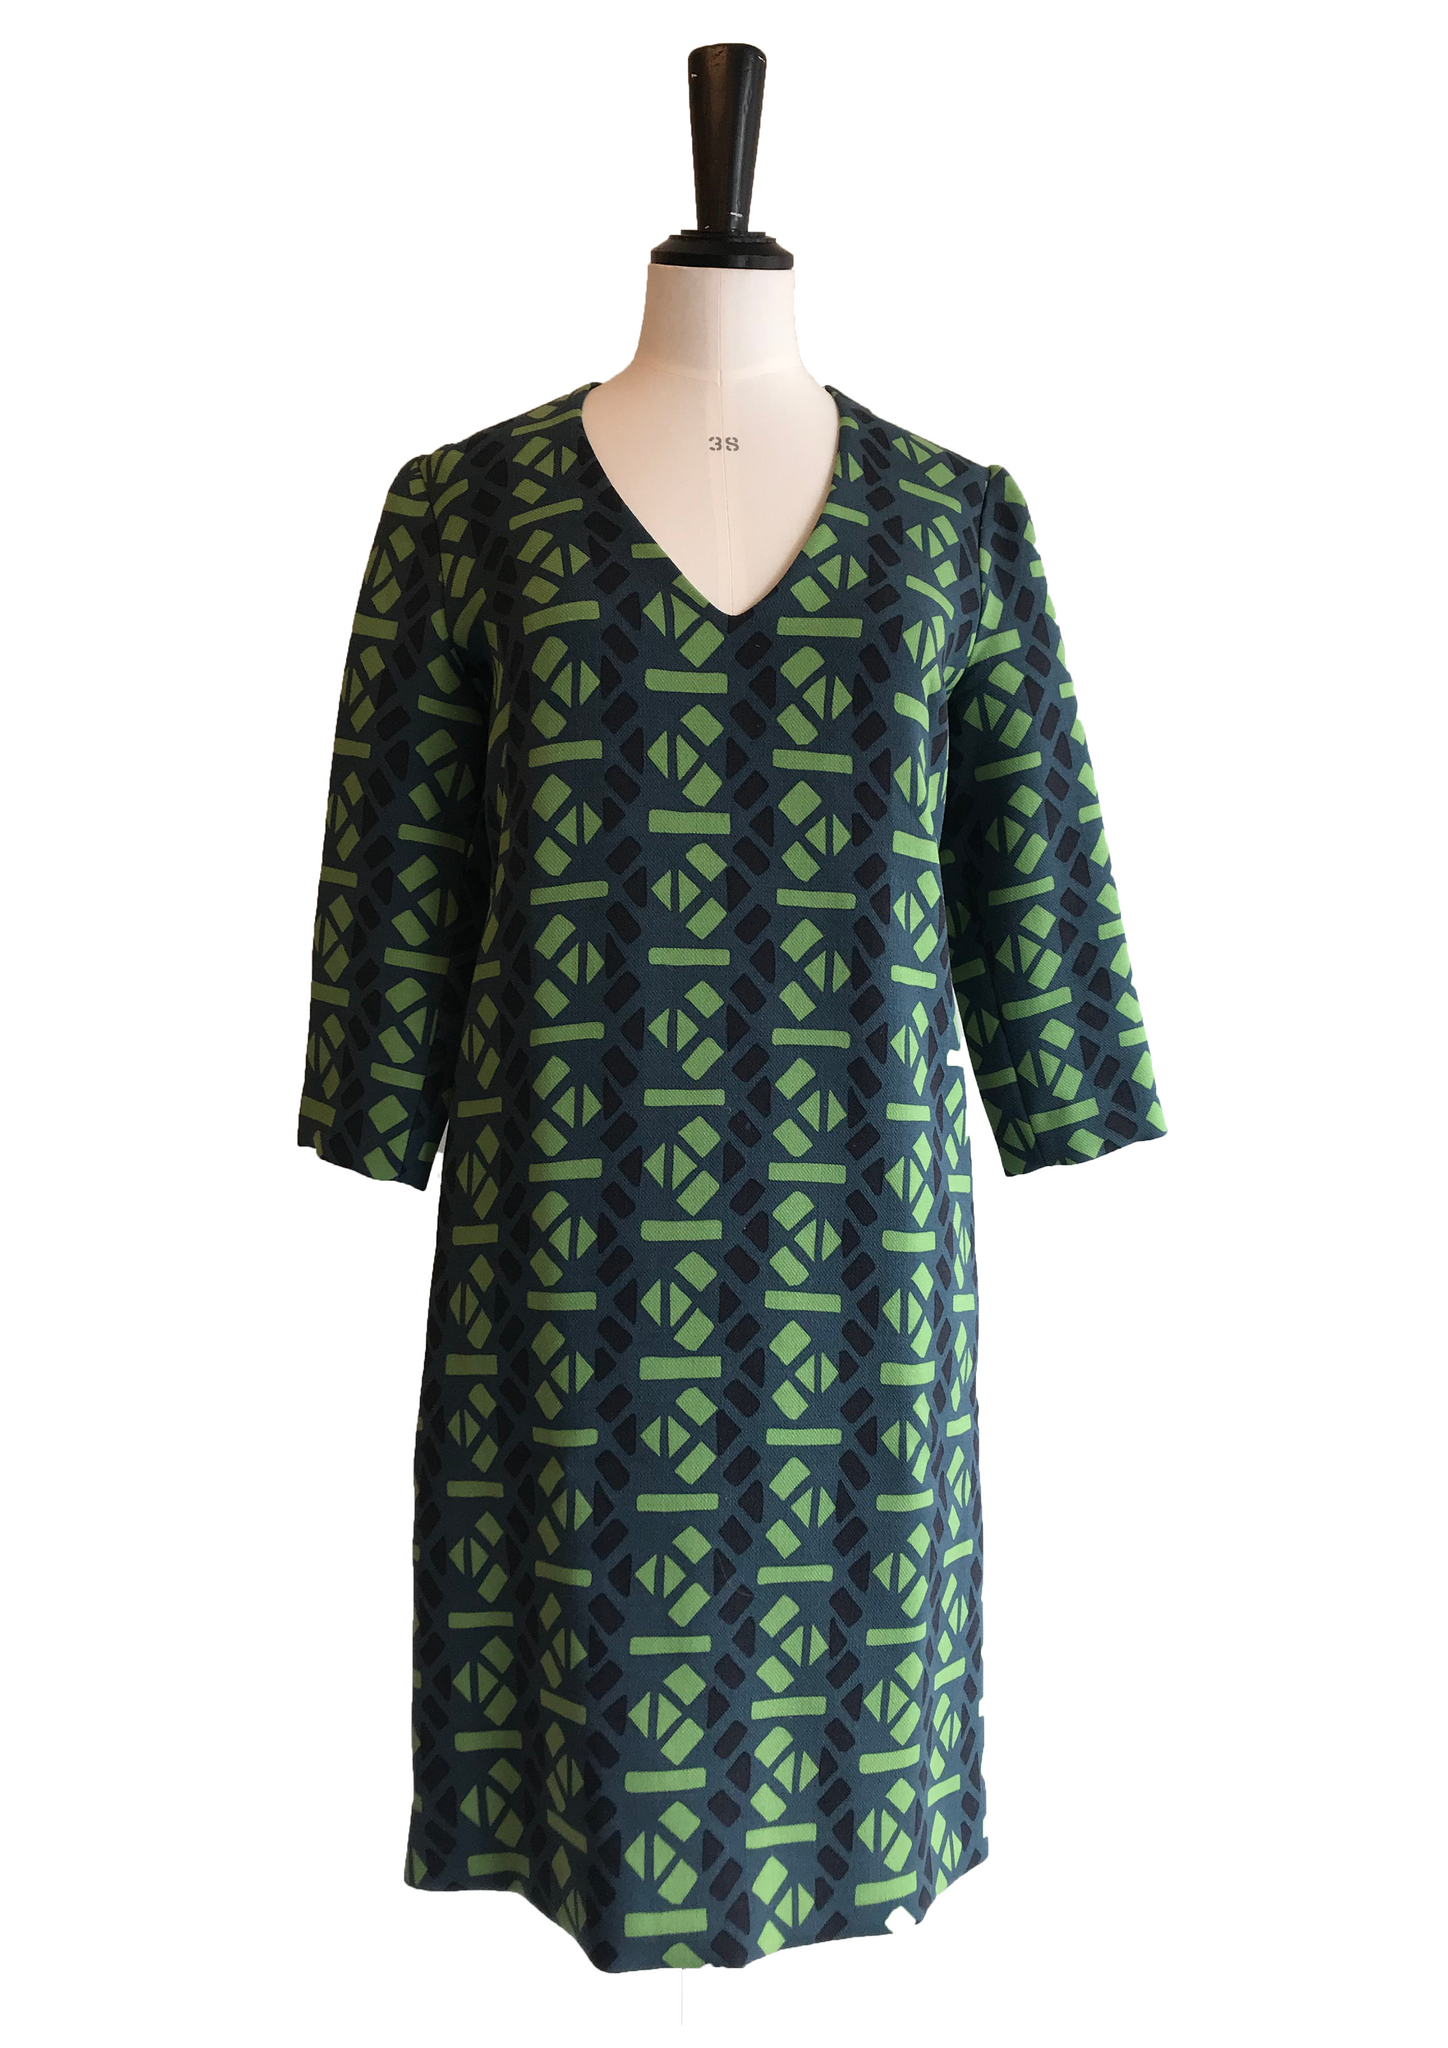 Isabella's Wardrobe Marni Abstract Print Dress.